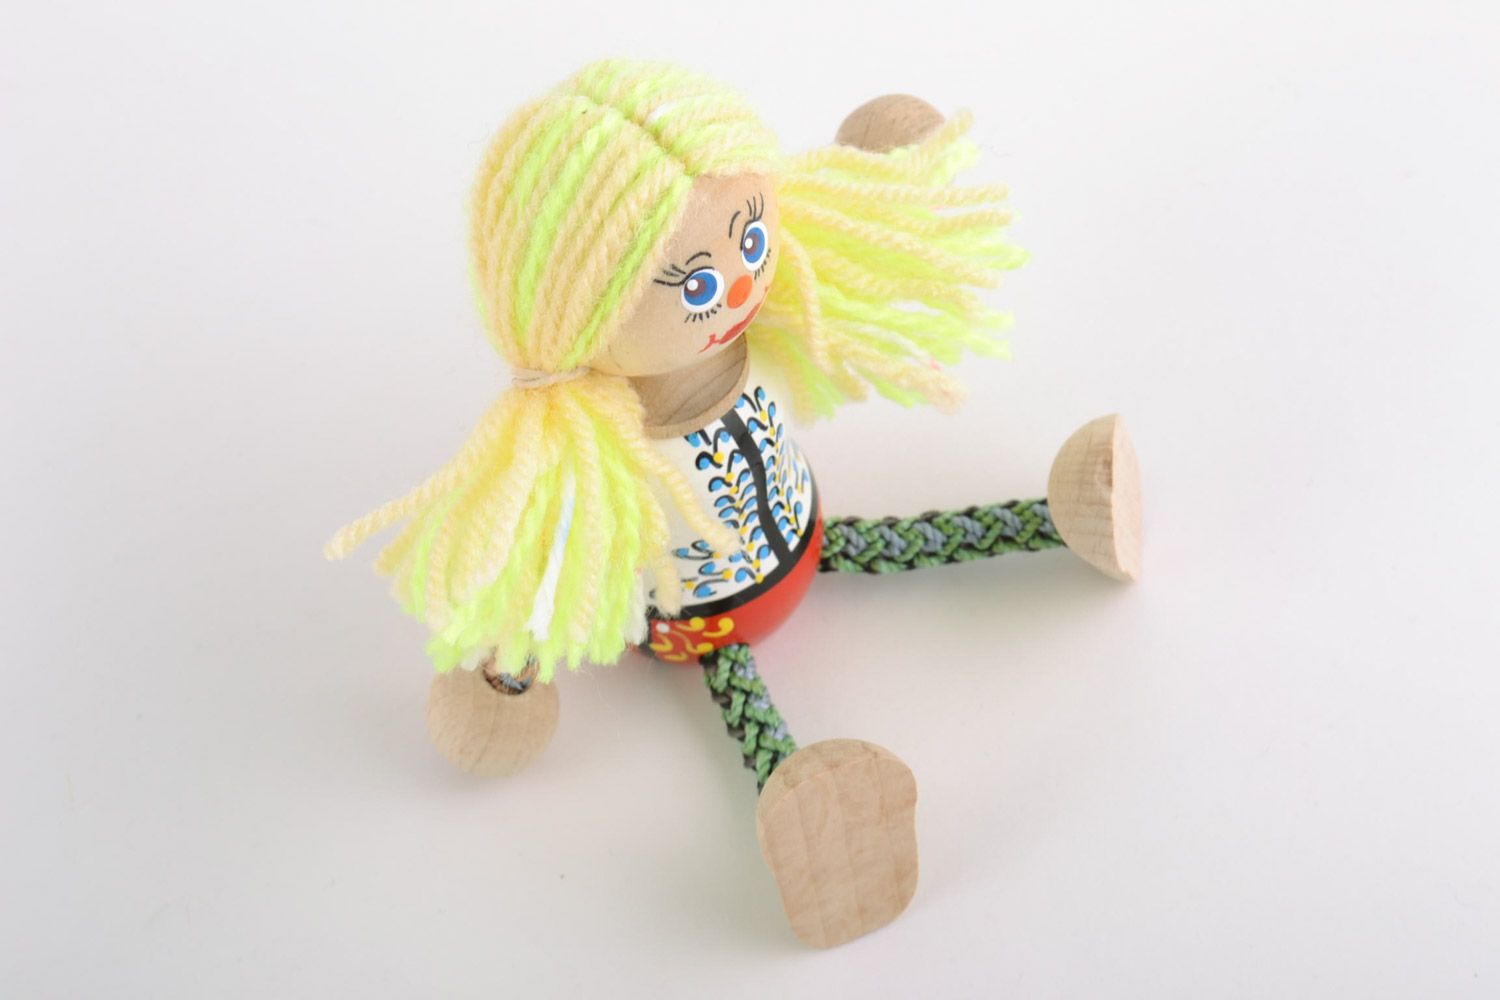 Juguete de madera con forma de muñeca hecho a mano pintado con tintes  foto 4